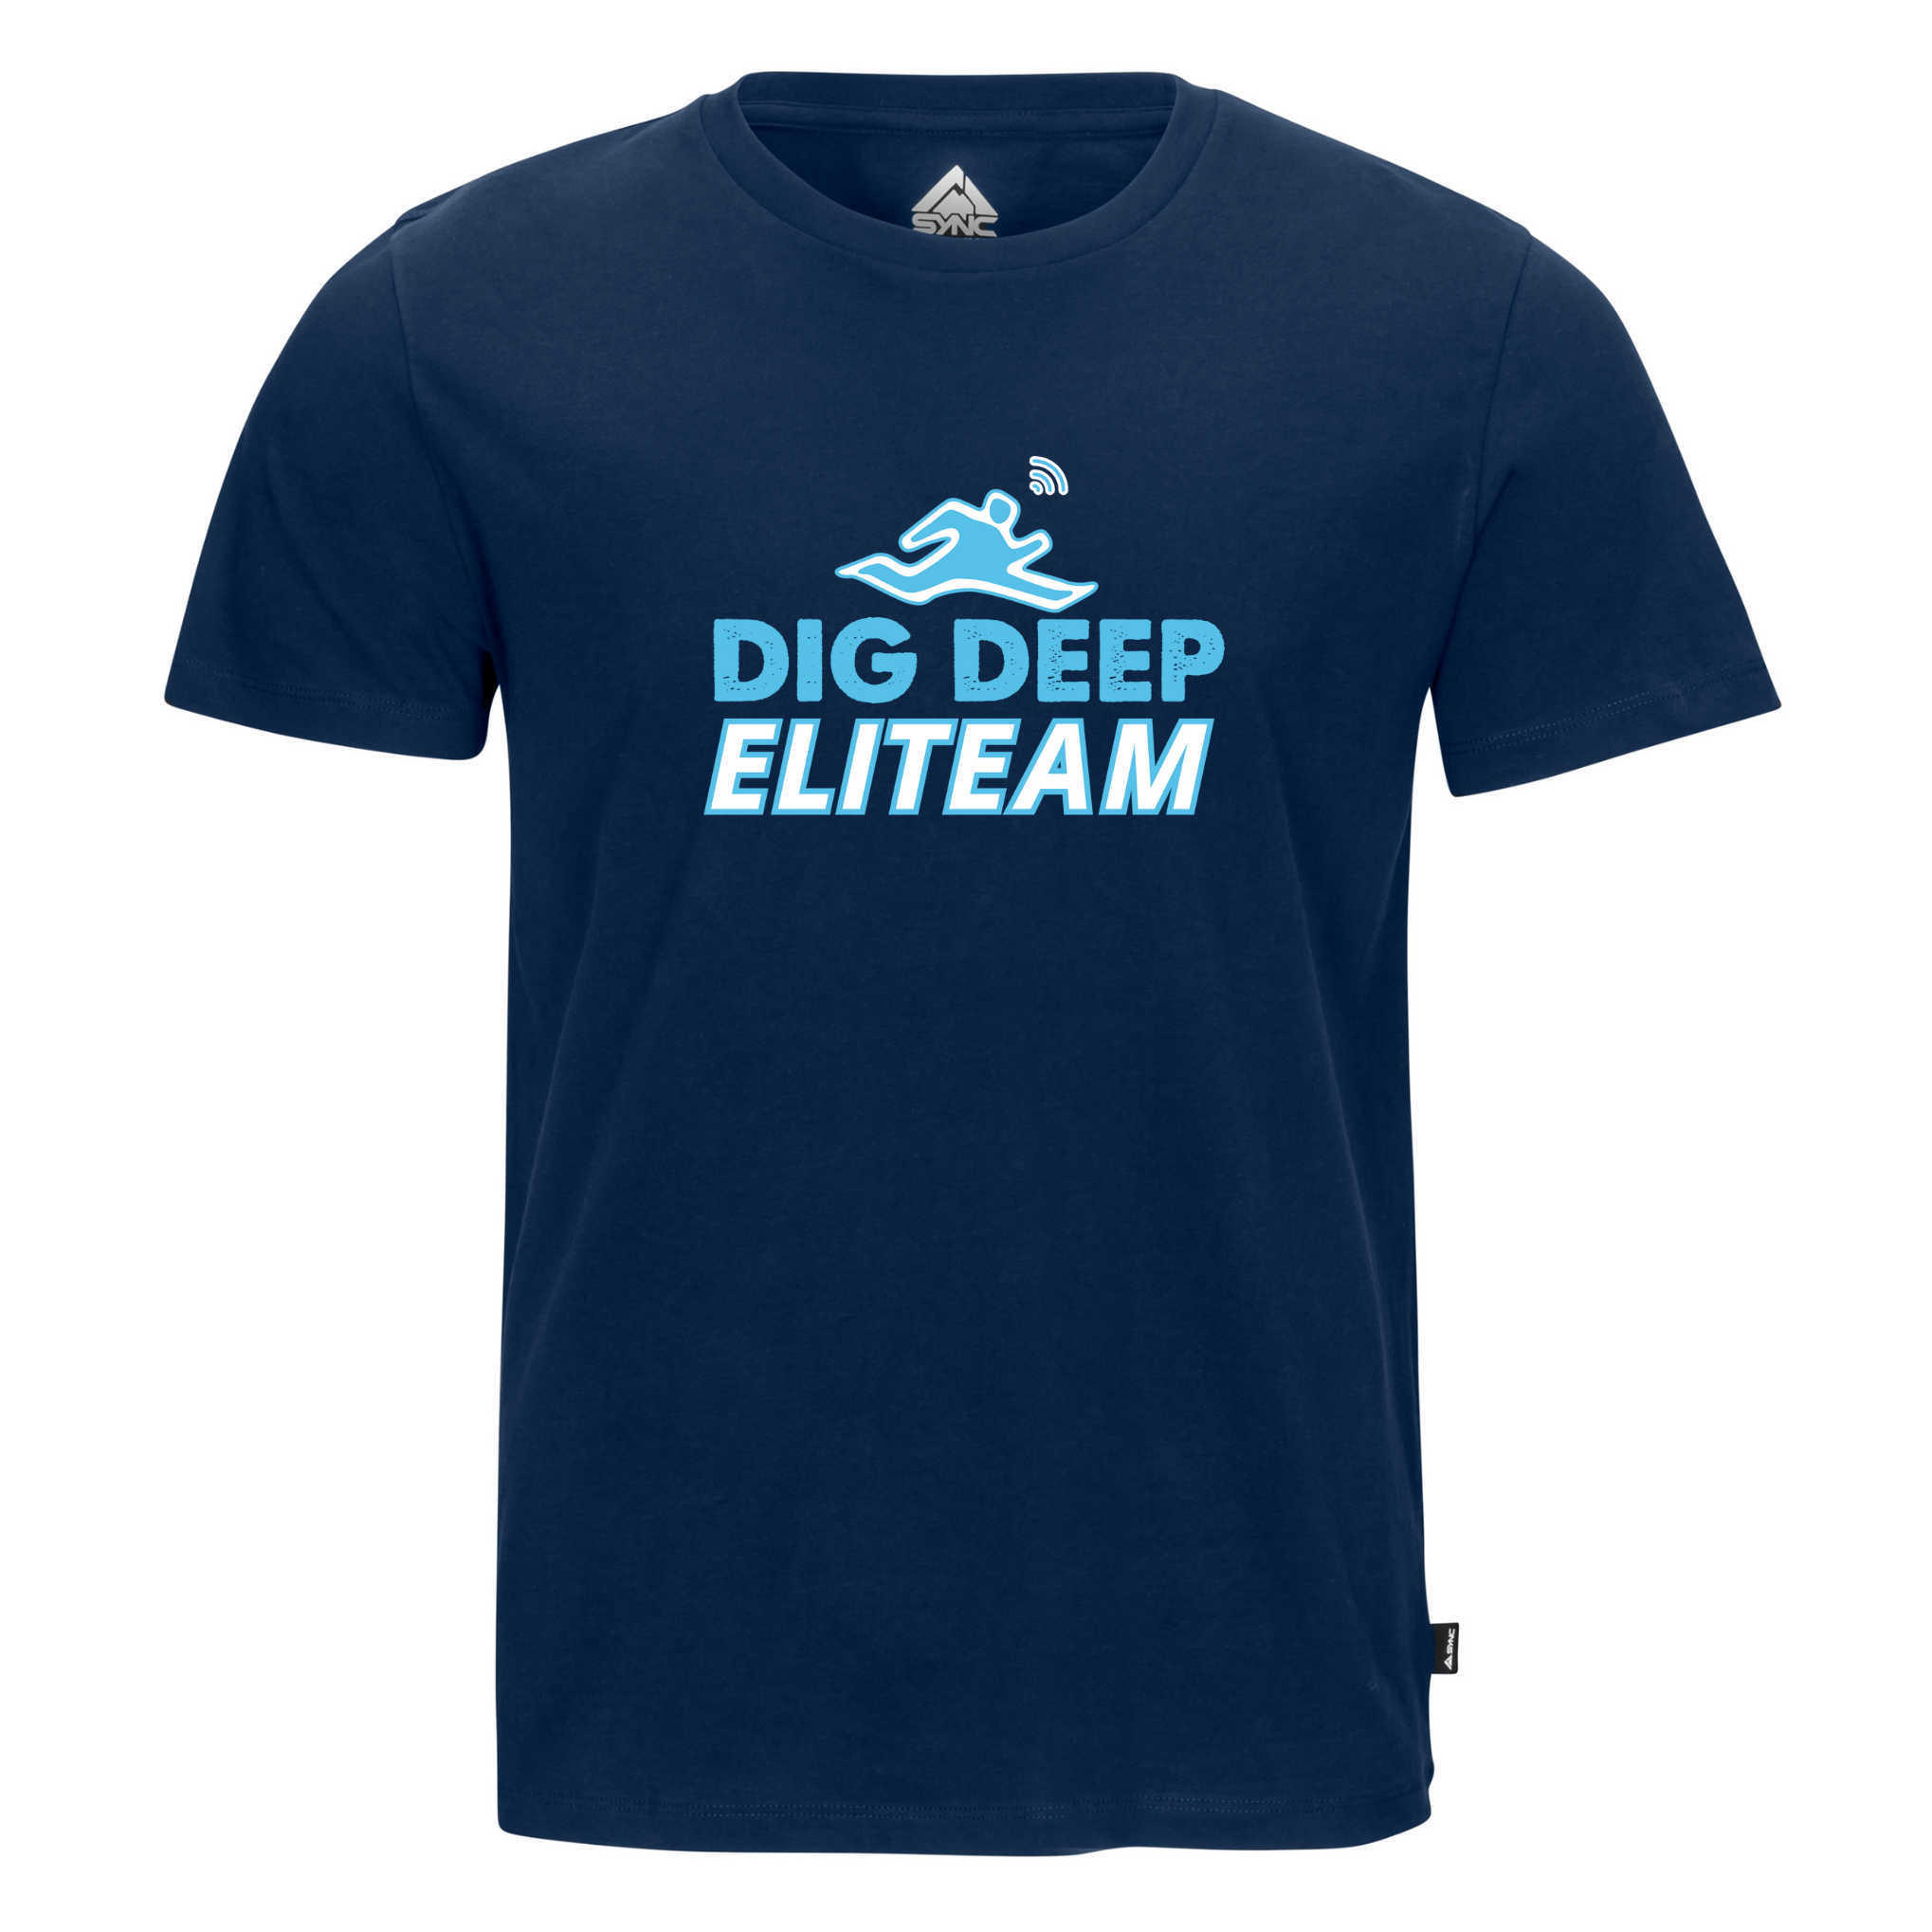 Adult Cotton T-Shirt - ELITEAM